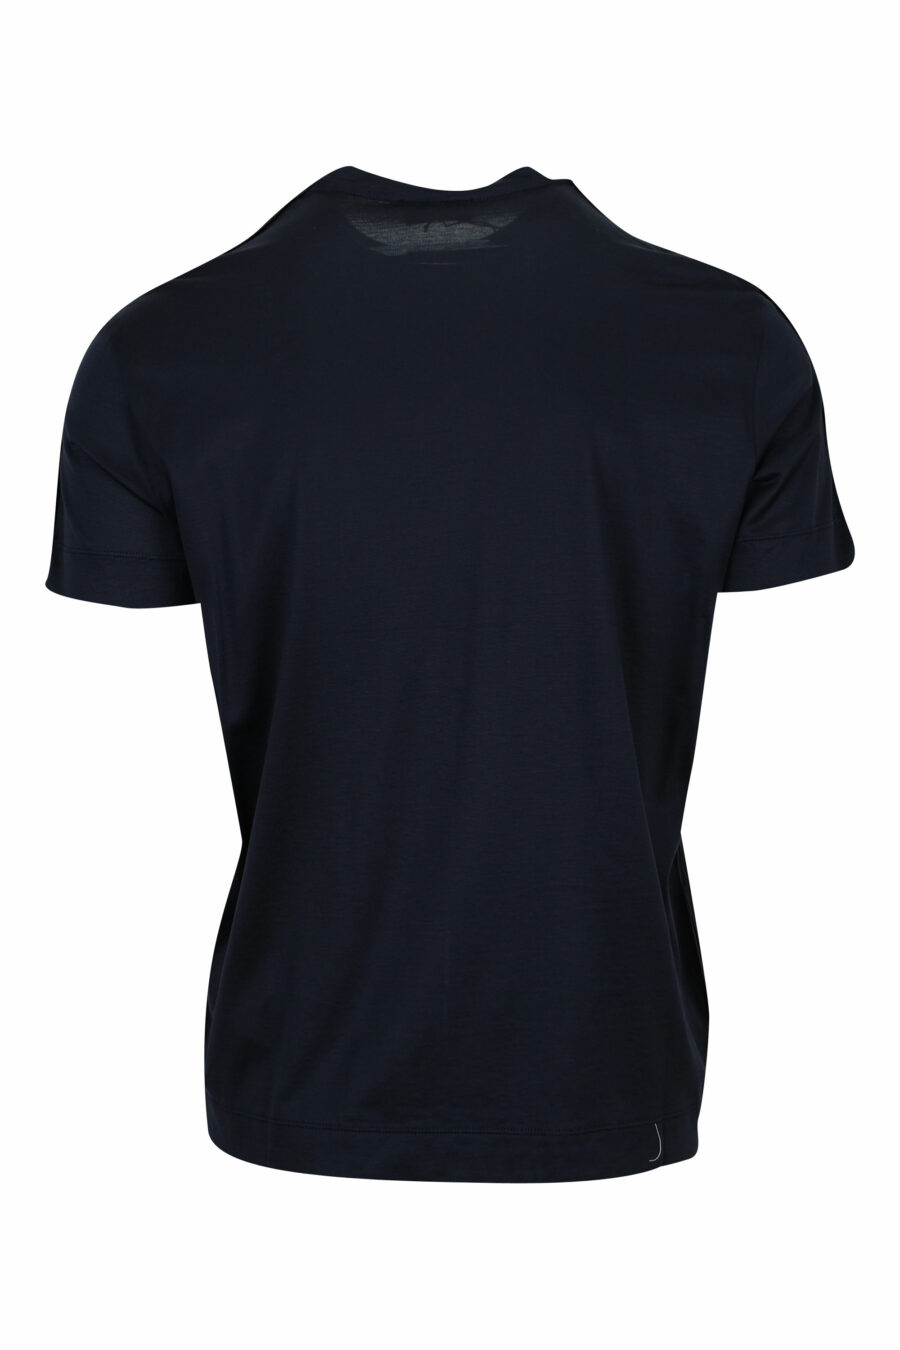 Camiseta azul oscuro con logo en hombros monocromático - 8058947986835 1